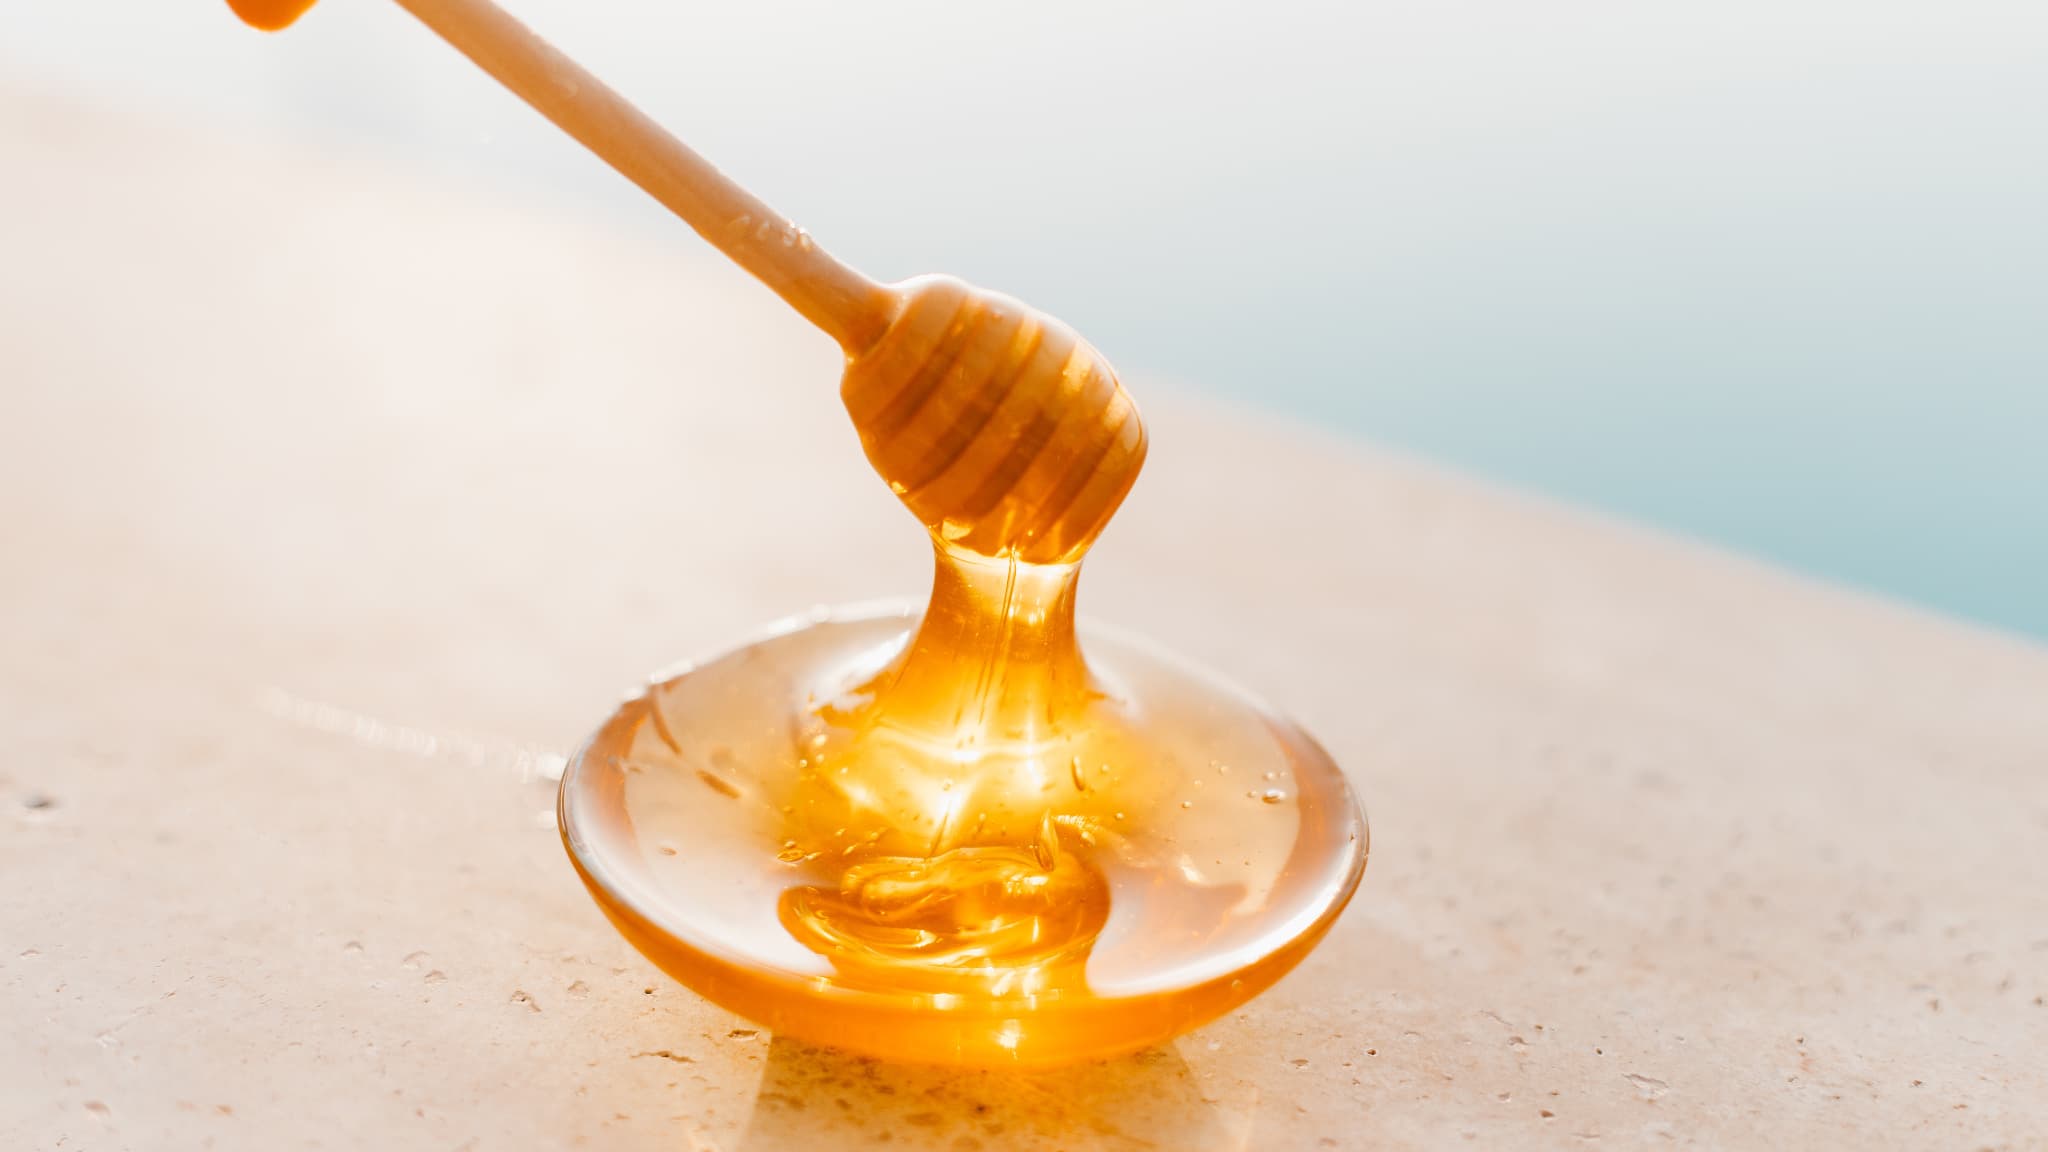 Des miels aphrodisiaques et dangereux dans le viseur des autorités